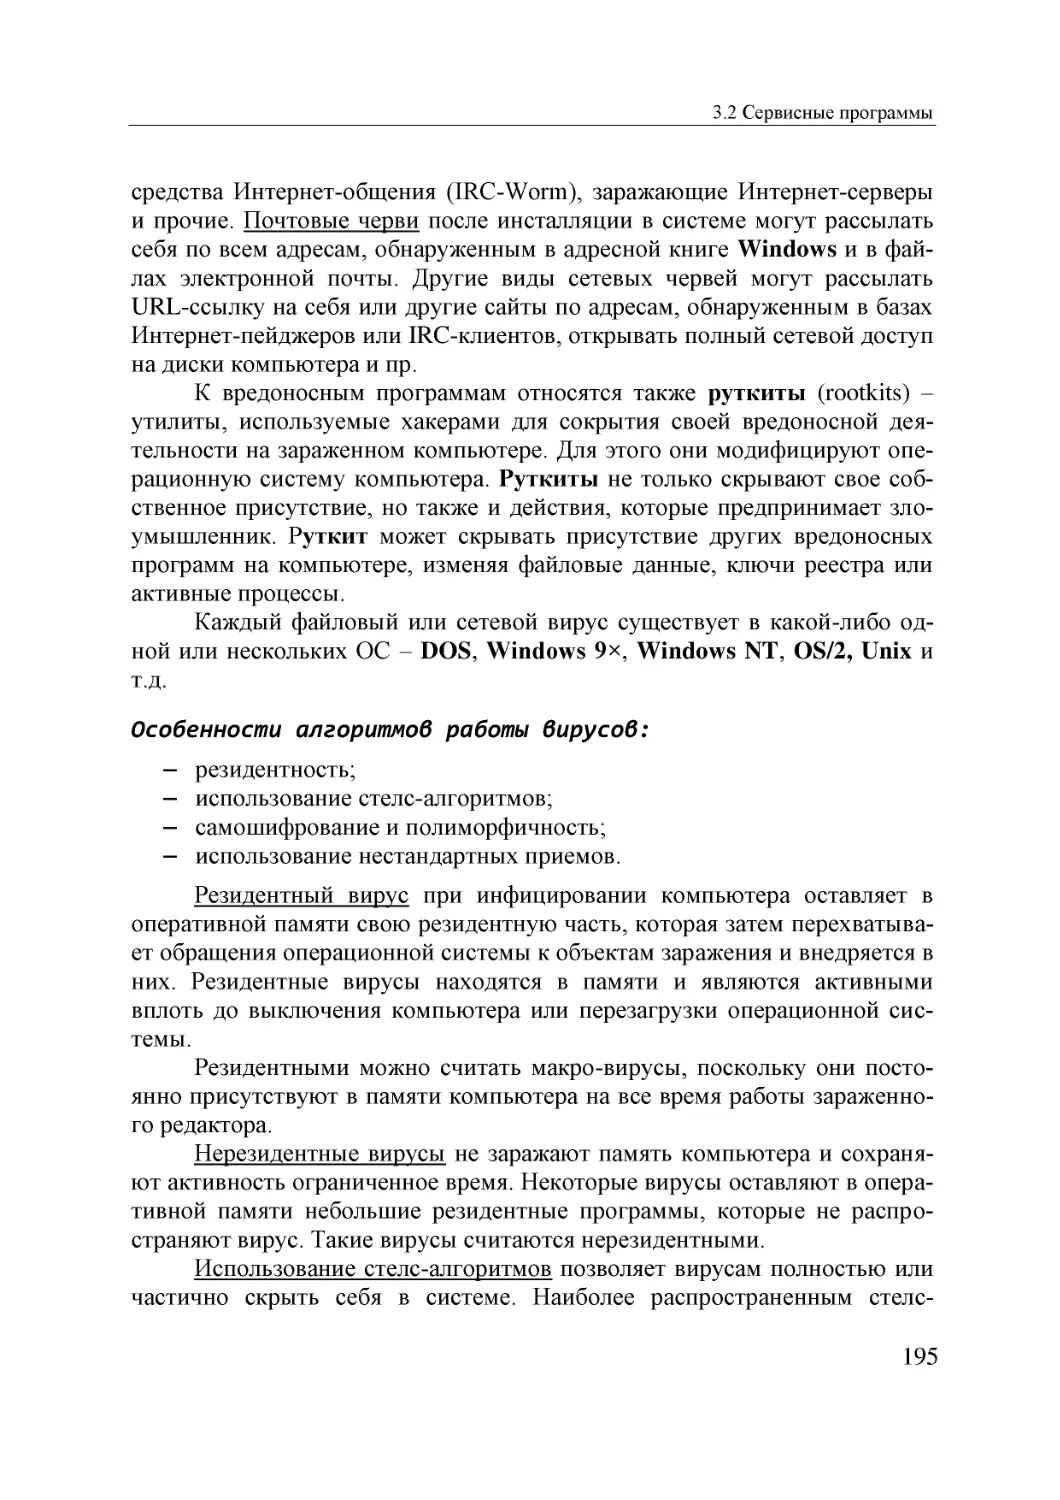 Informatika_Uchebnik_dlya_vuzov_2010 195